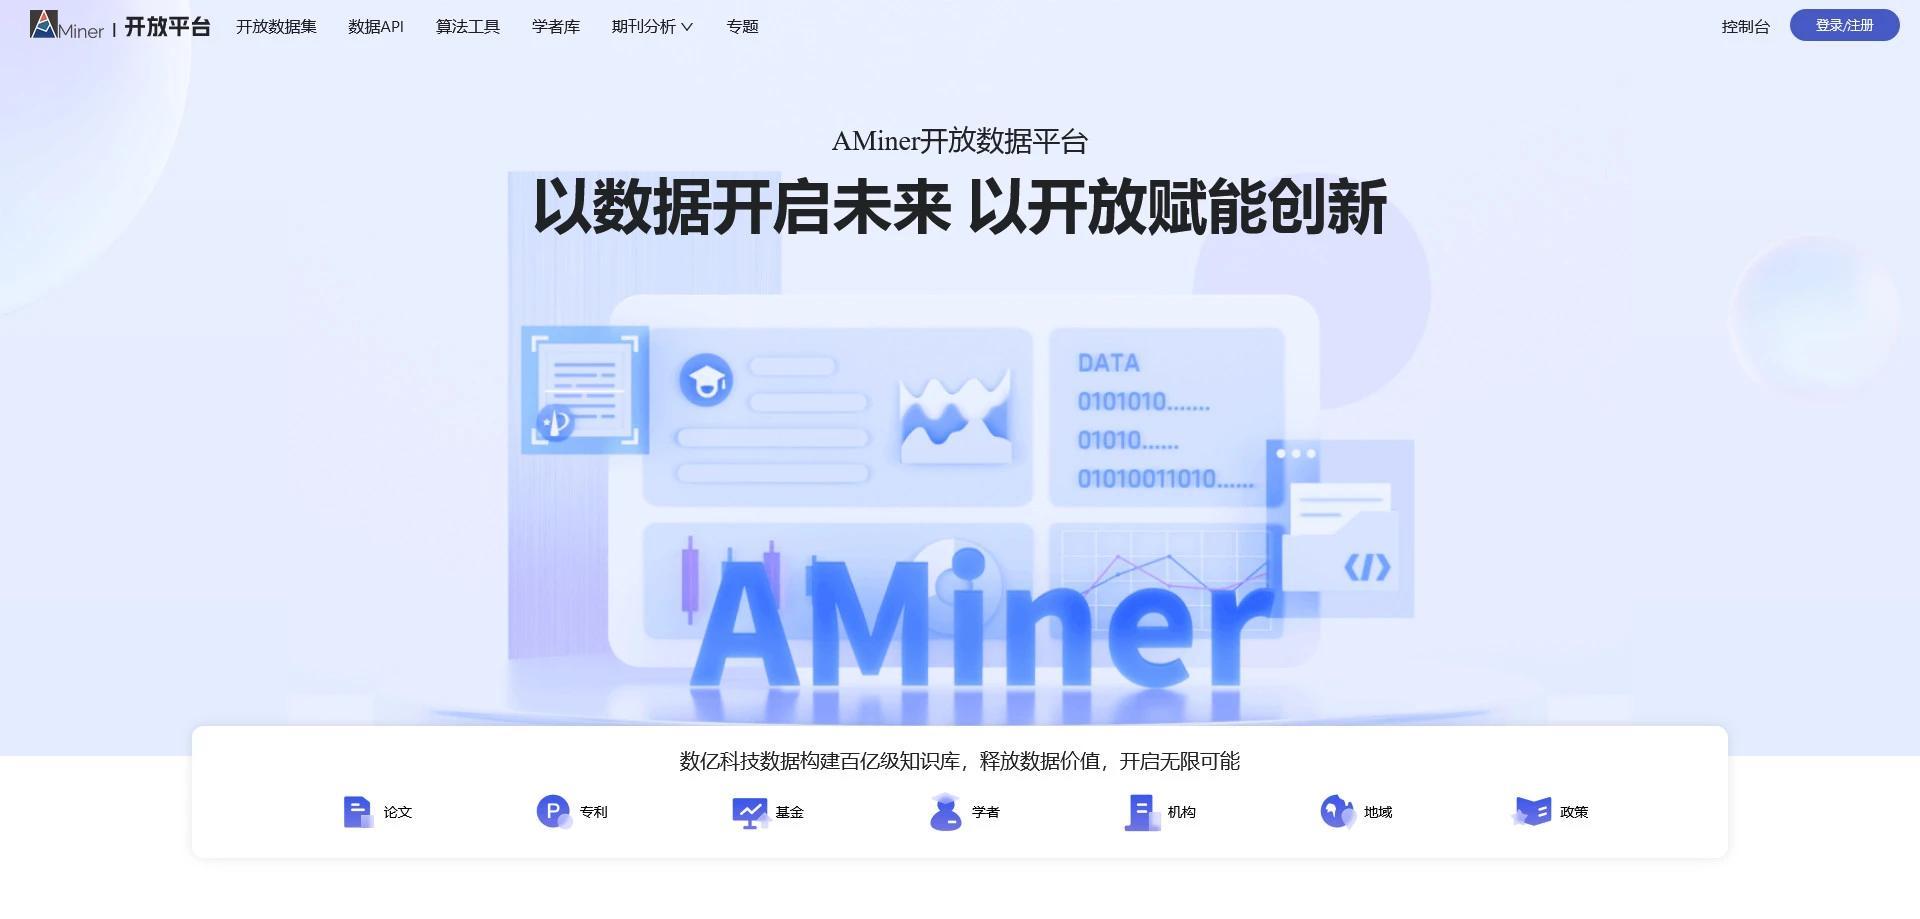 AI工具与服务推荐 - AMiner开放平台 - AI科研数据平台 - 特色图片